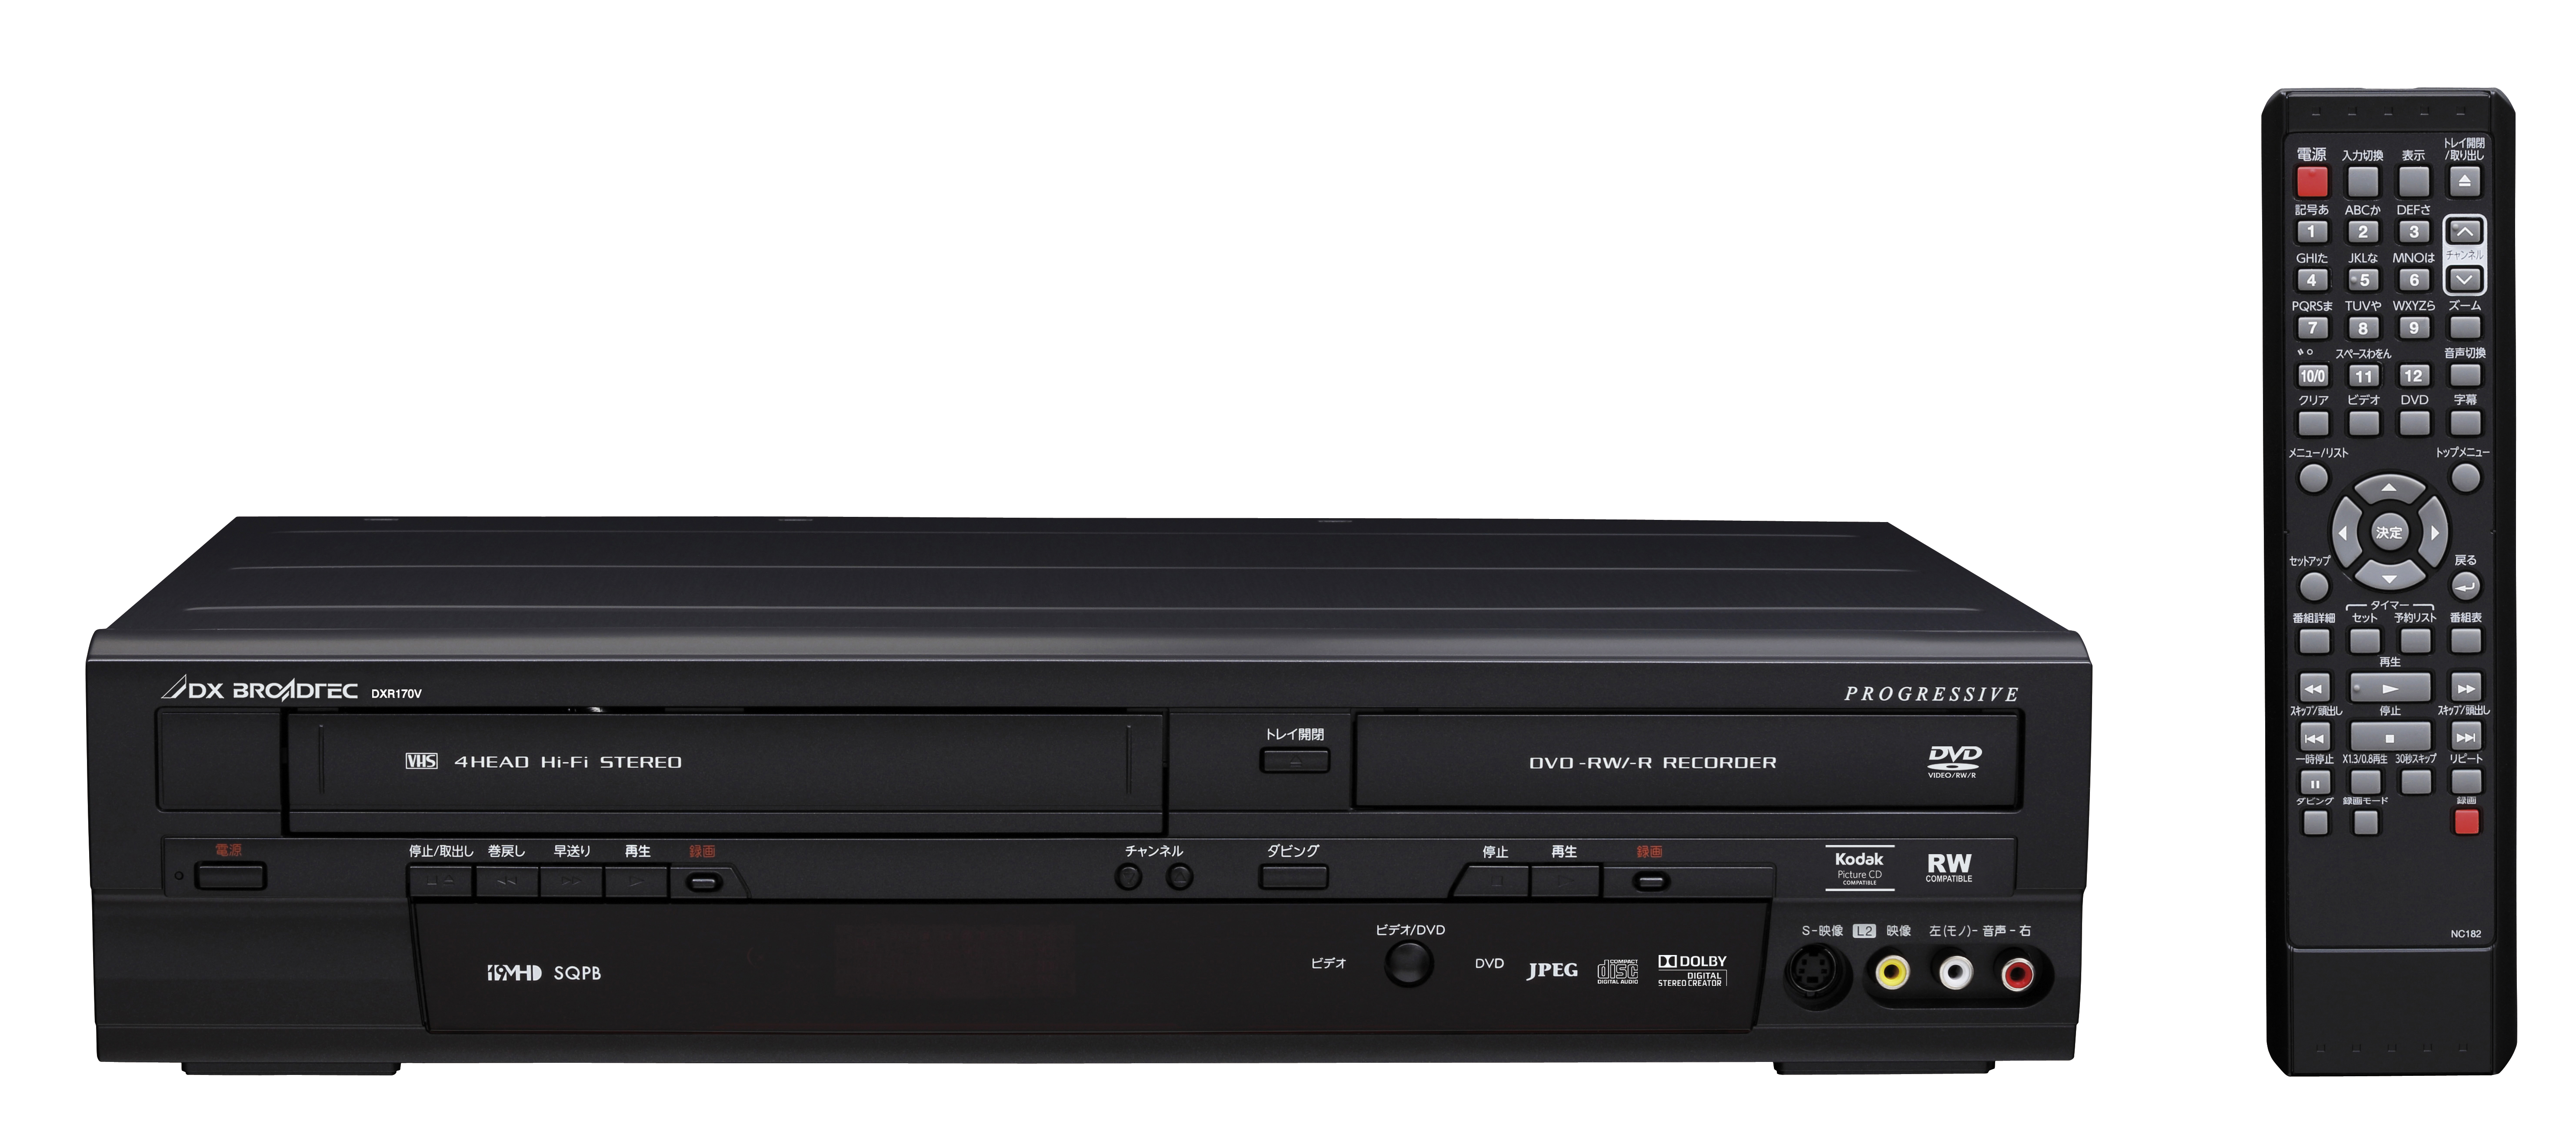 割引ショッピング  DXR170V 地上デジチューナー内蔵ビデオ一体型DVDレコーダー DXアンテナ DVDレコーダー